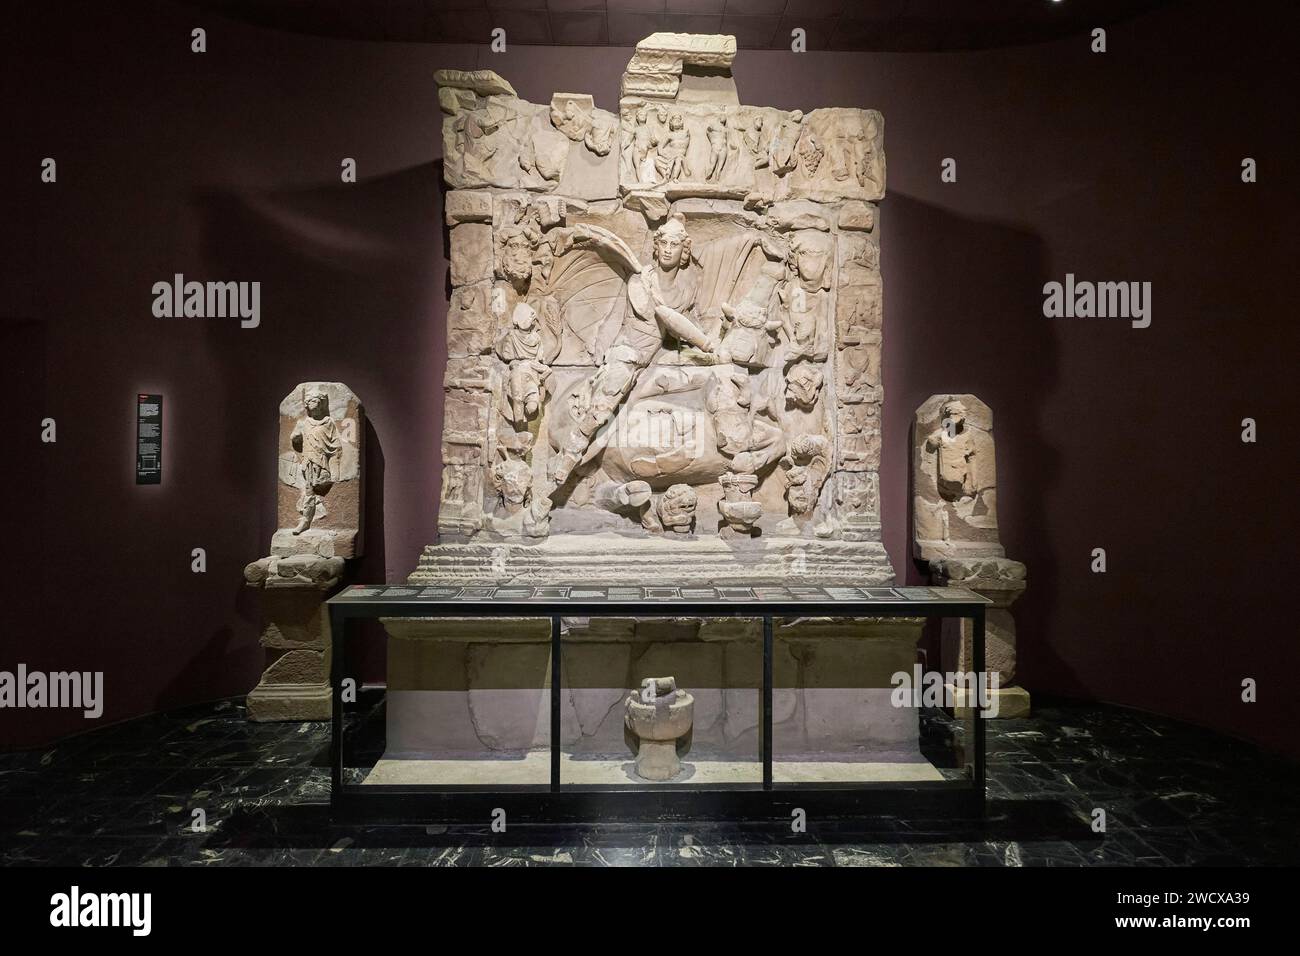 Frankreich, Mosel, Metz, das Museum Cour d’Or von Metz Metropole, gallo-römische Sammlungen, das Relief von Mithras, das Basrelief des gallo-römischen Mithraeums in Sarrebourg Stockfoto